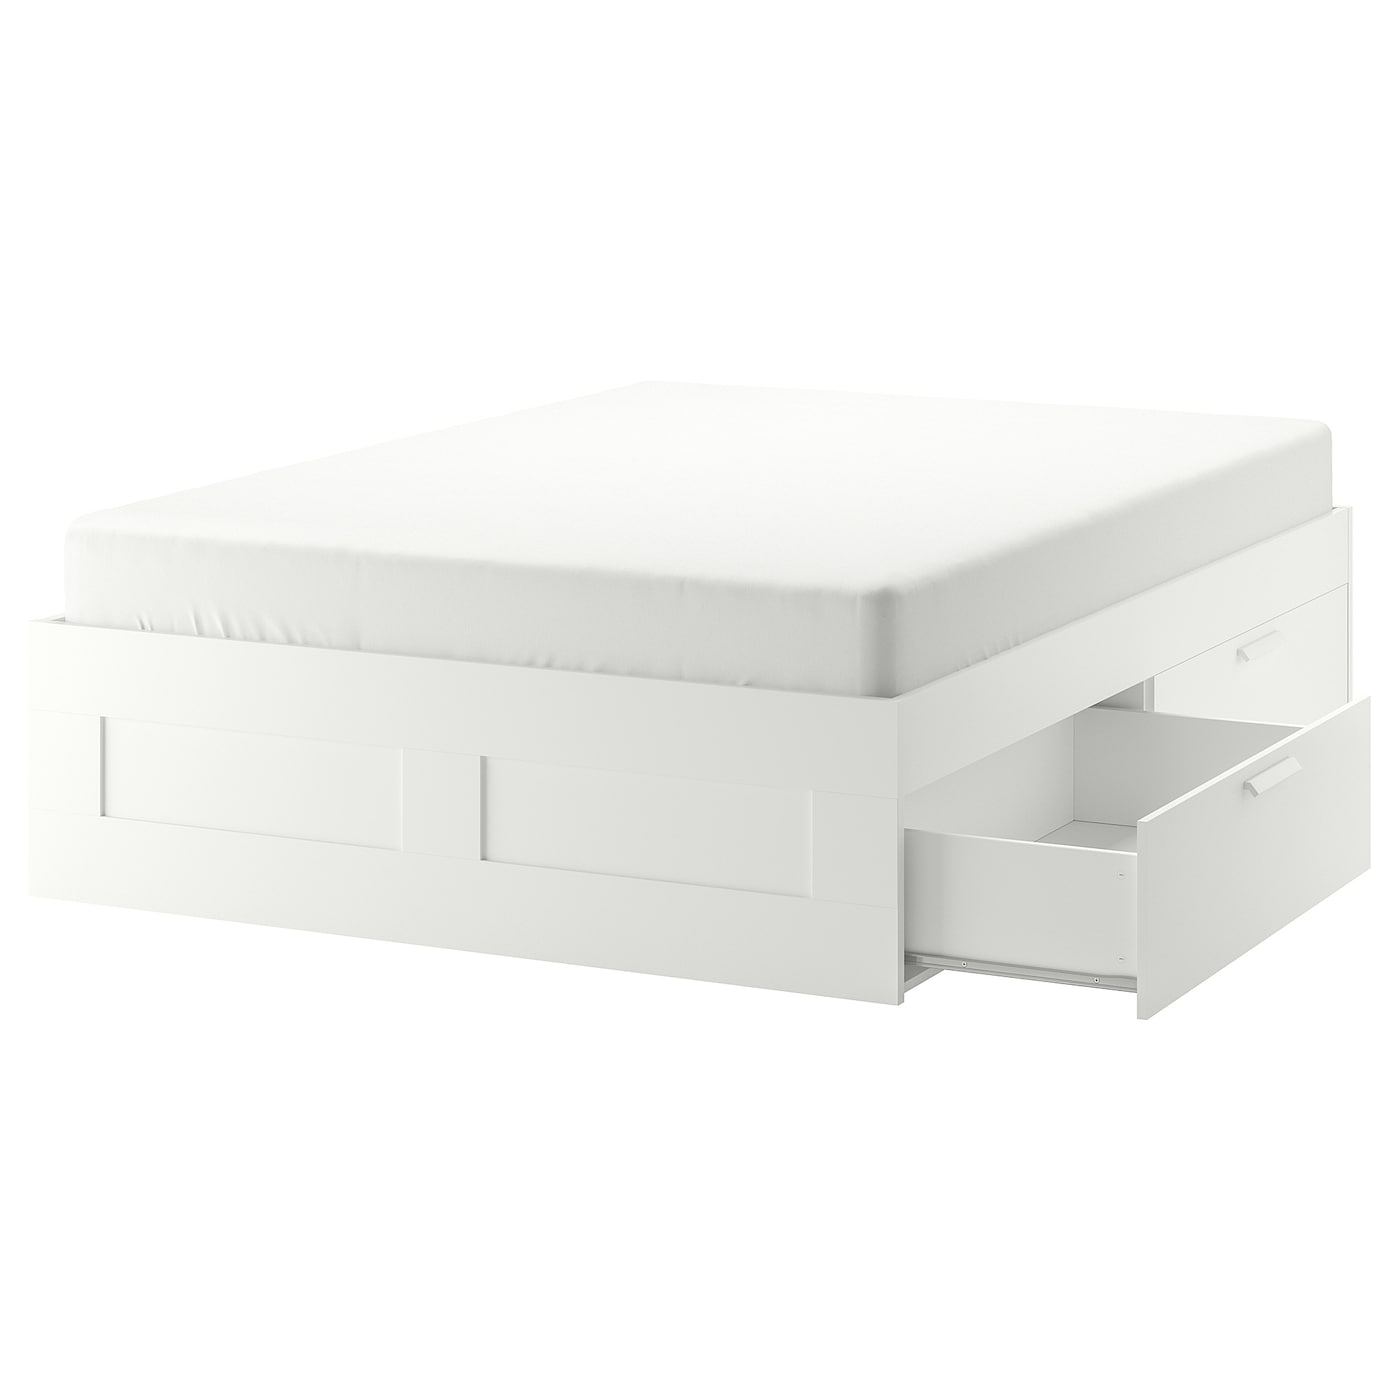 Основание двуспальной кровати - IKEA BRIMNES/LÖNSET/LONSET, 180х200 см, белый, БРИМНЕС/ЛОНСЕТ ИКЕА